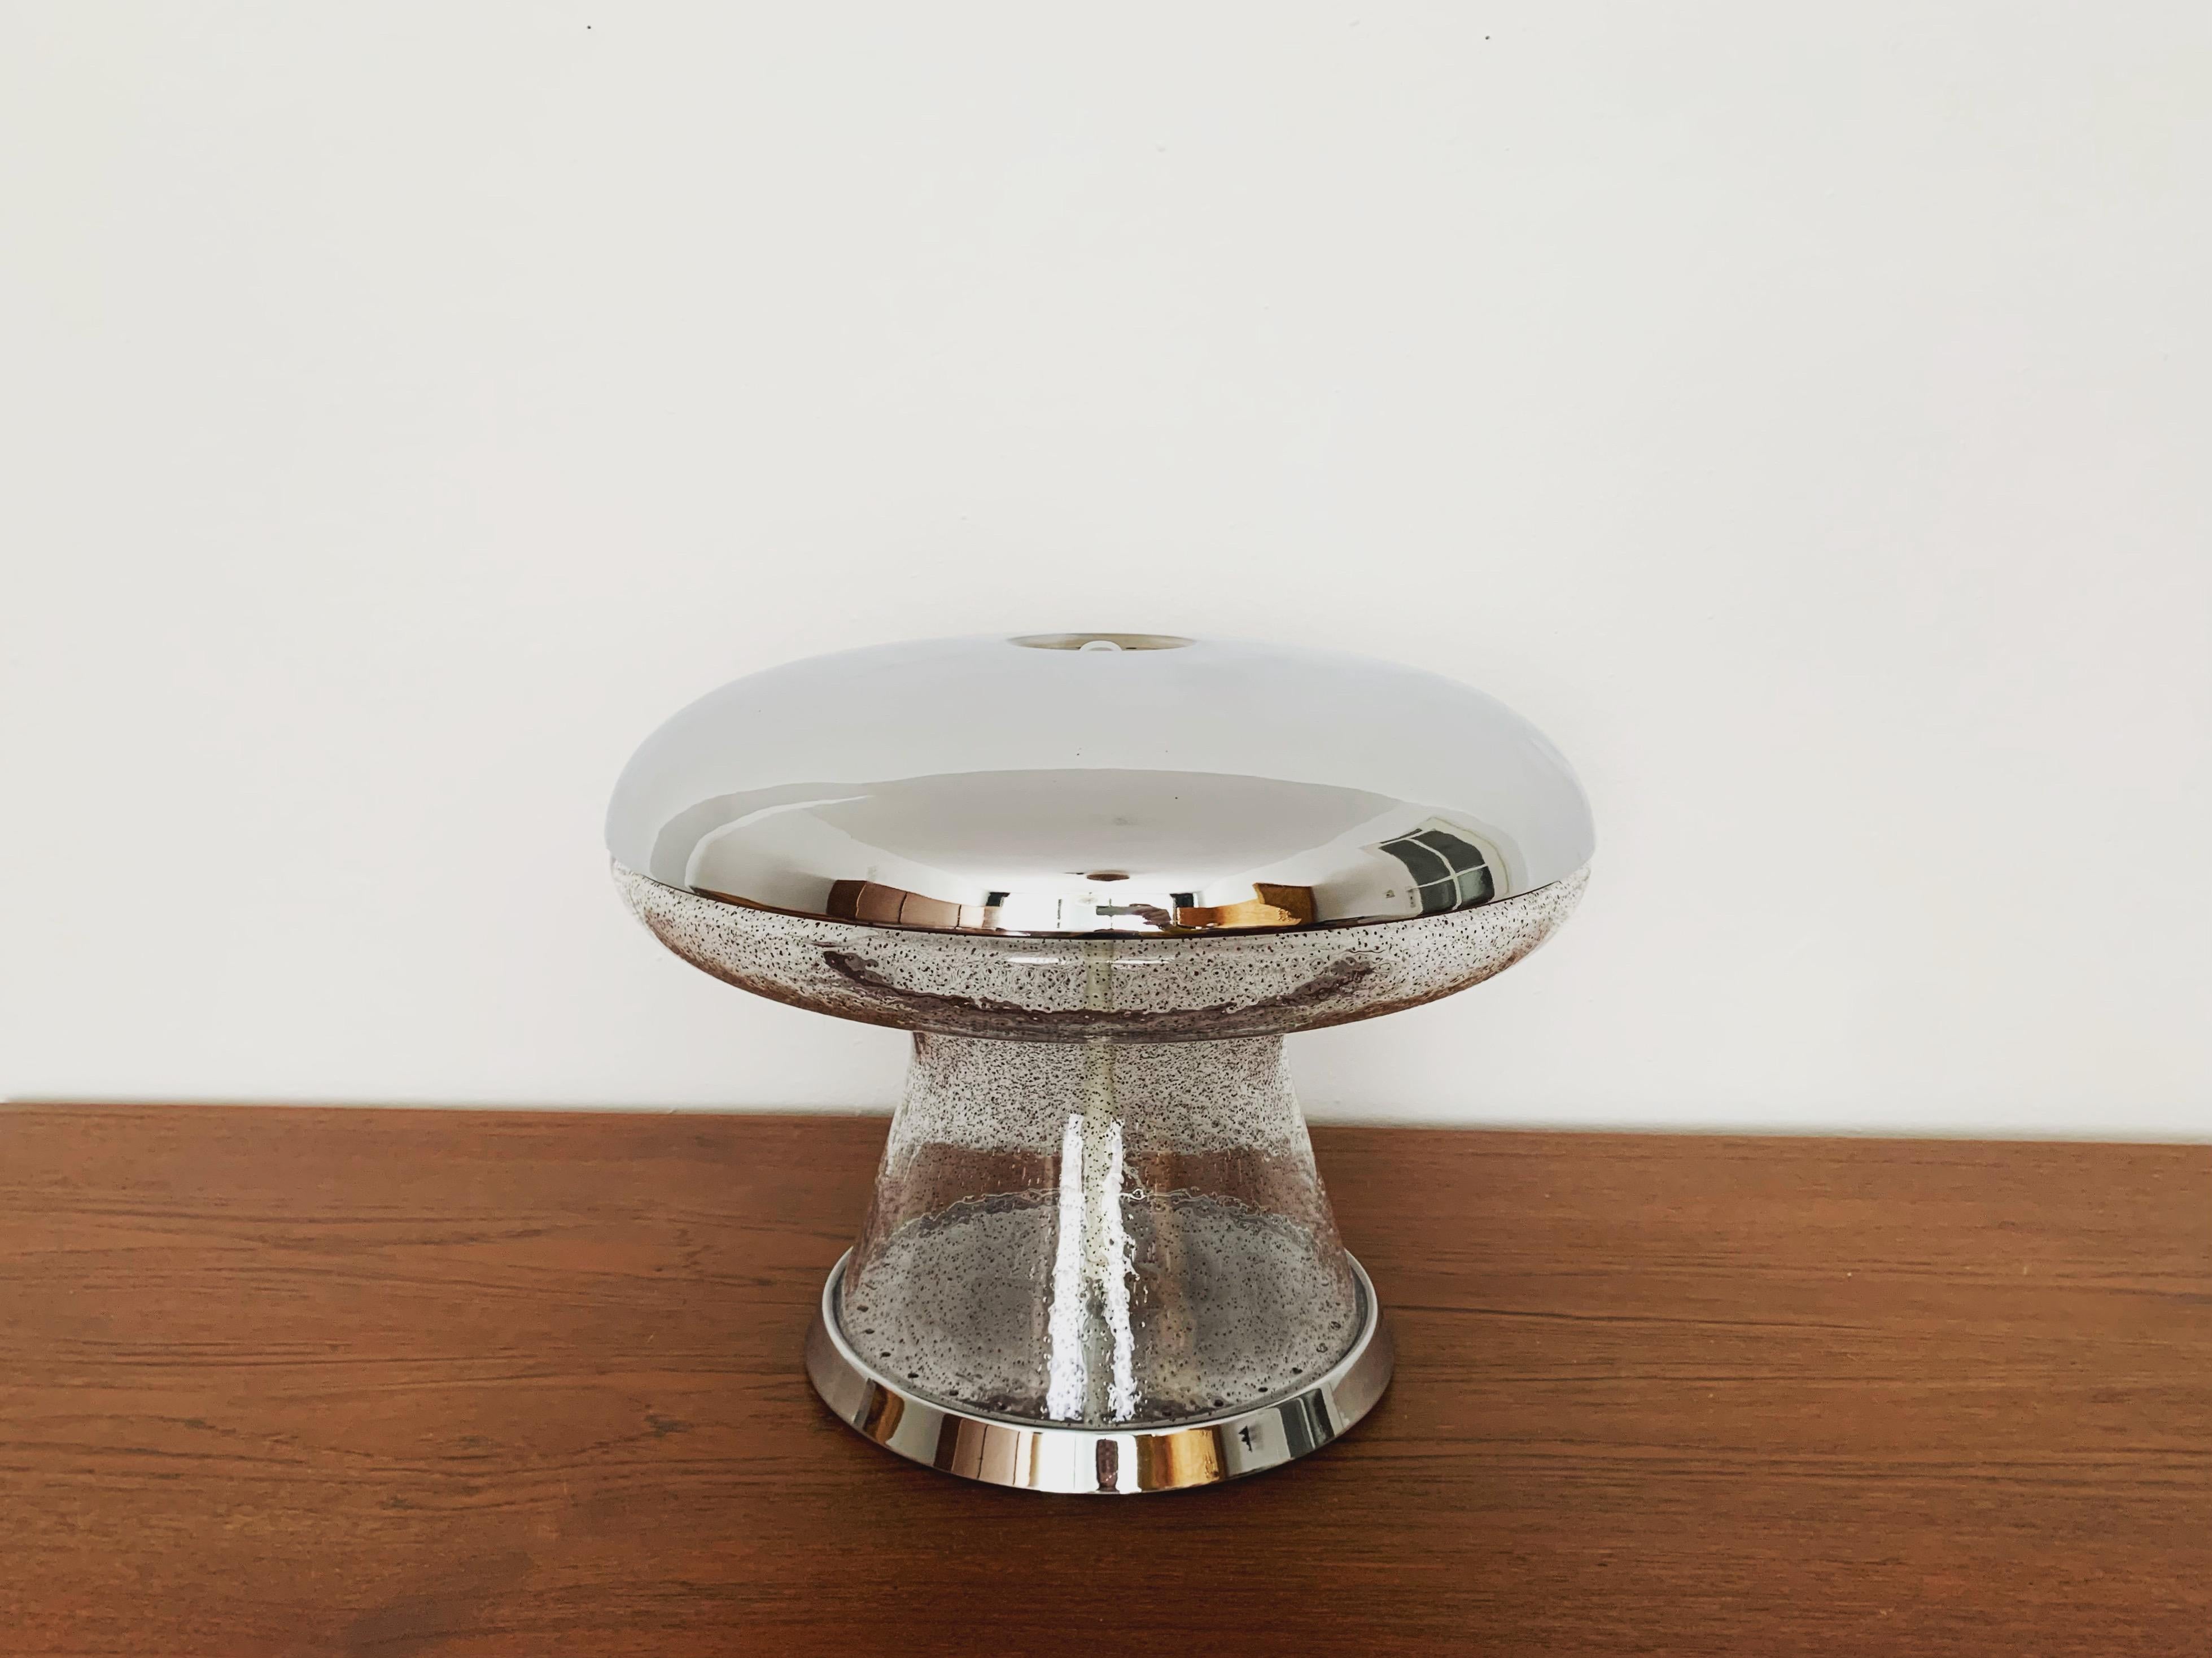 Très belle lampe de table en verre de glace de haute qualité des années 1960.
Cette lampe est très noble et constitue un objet de design très spécial.
Les inclusions rouges dans le verre créent une lumière très pétillante.

Condit :

Très bon état